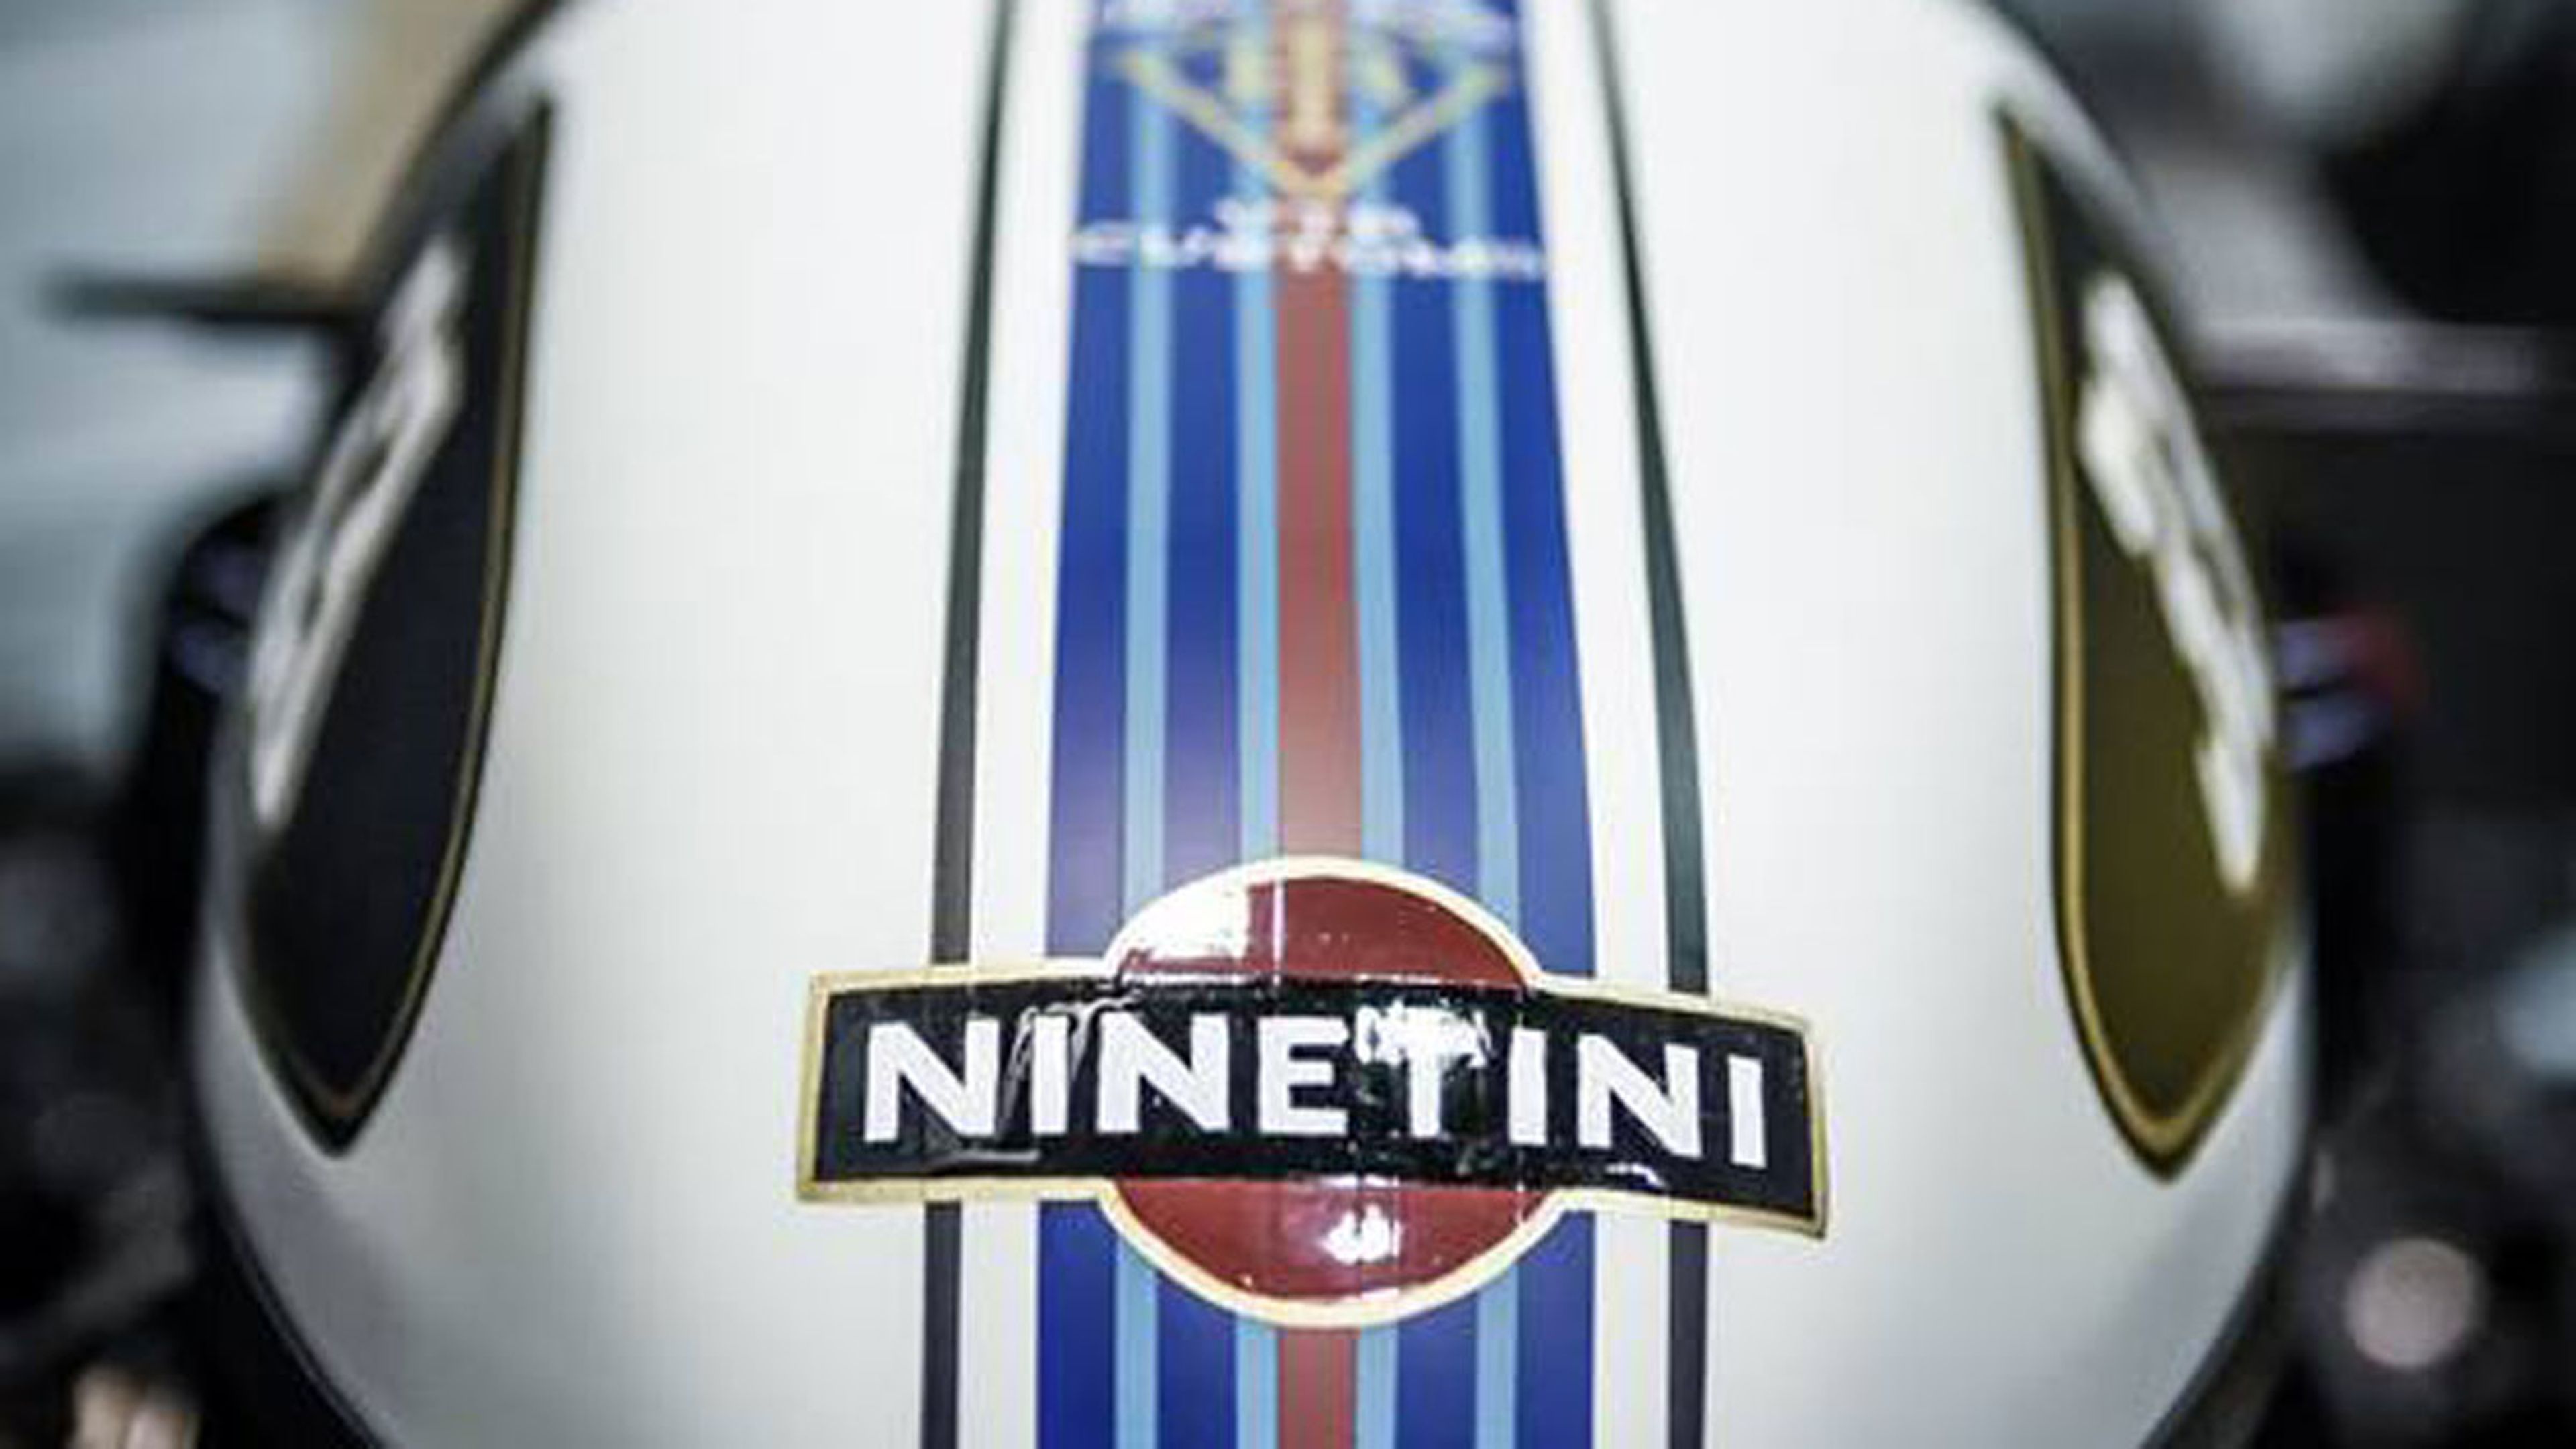 Vista de la decoración de la VTR Ninetini